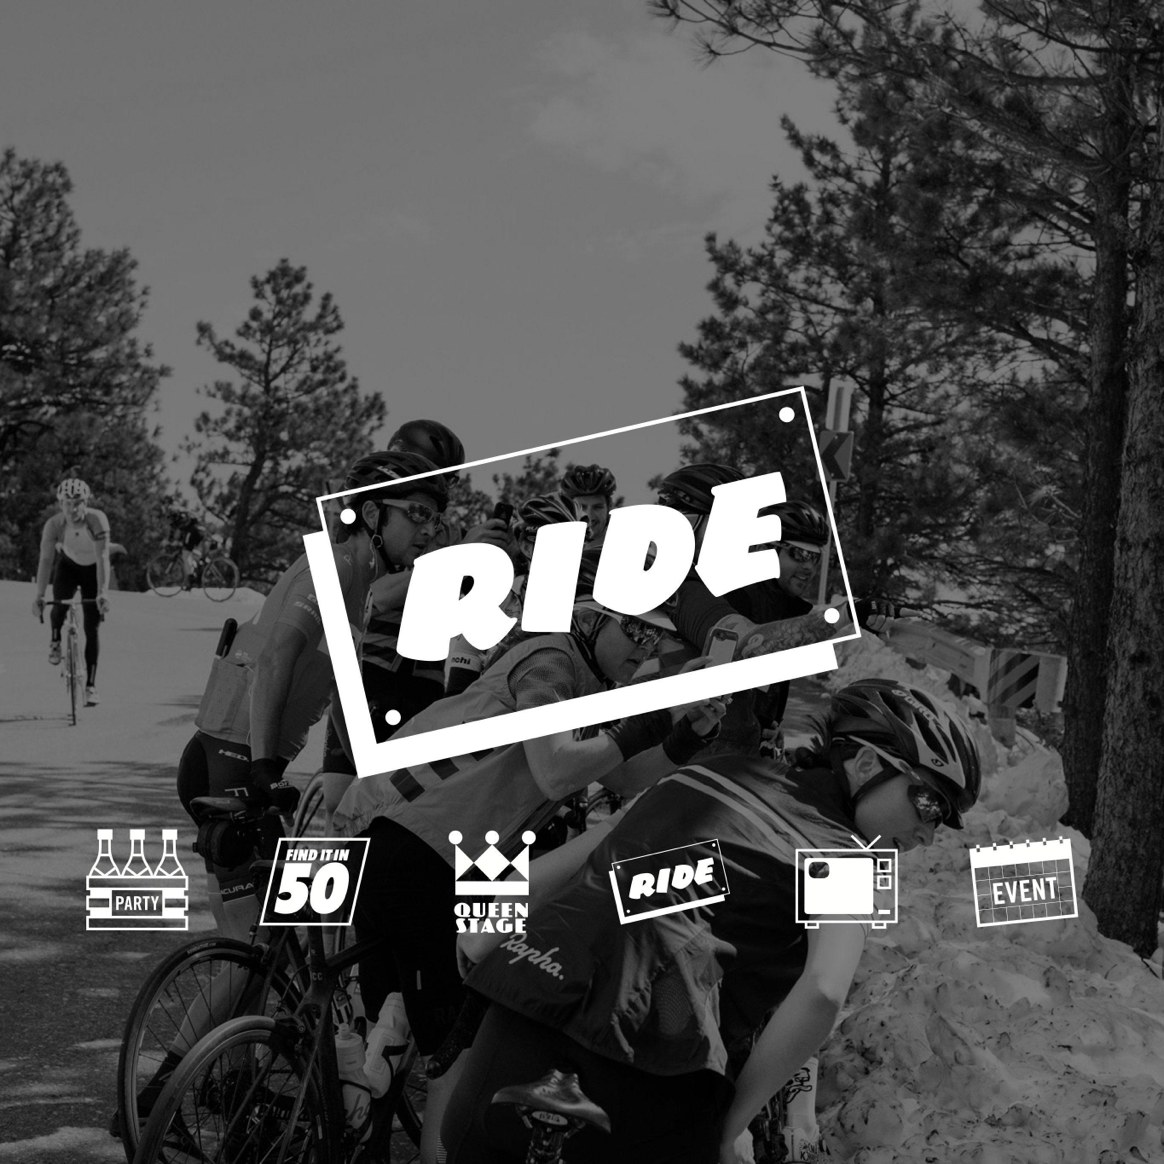 Rapha: una marca de referencia para todos los ciclistas – Sanferbike